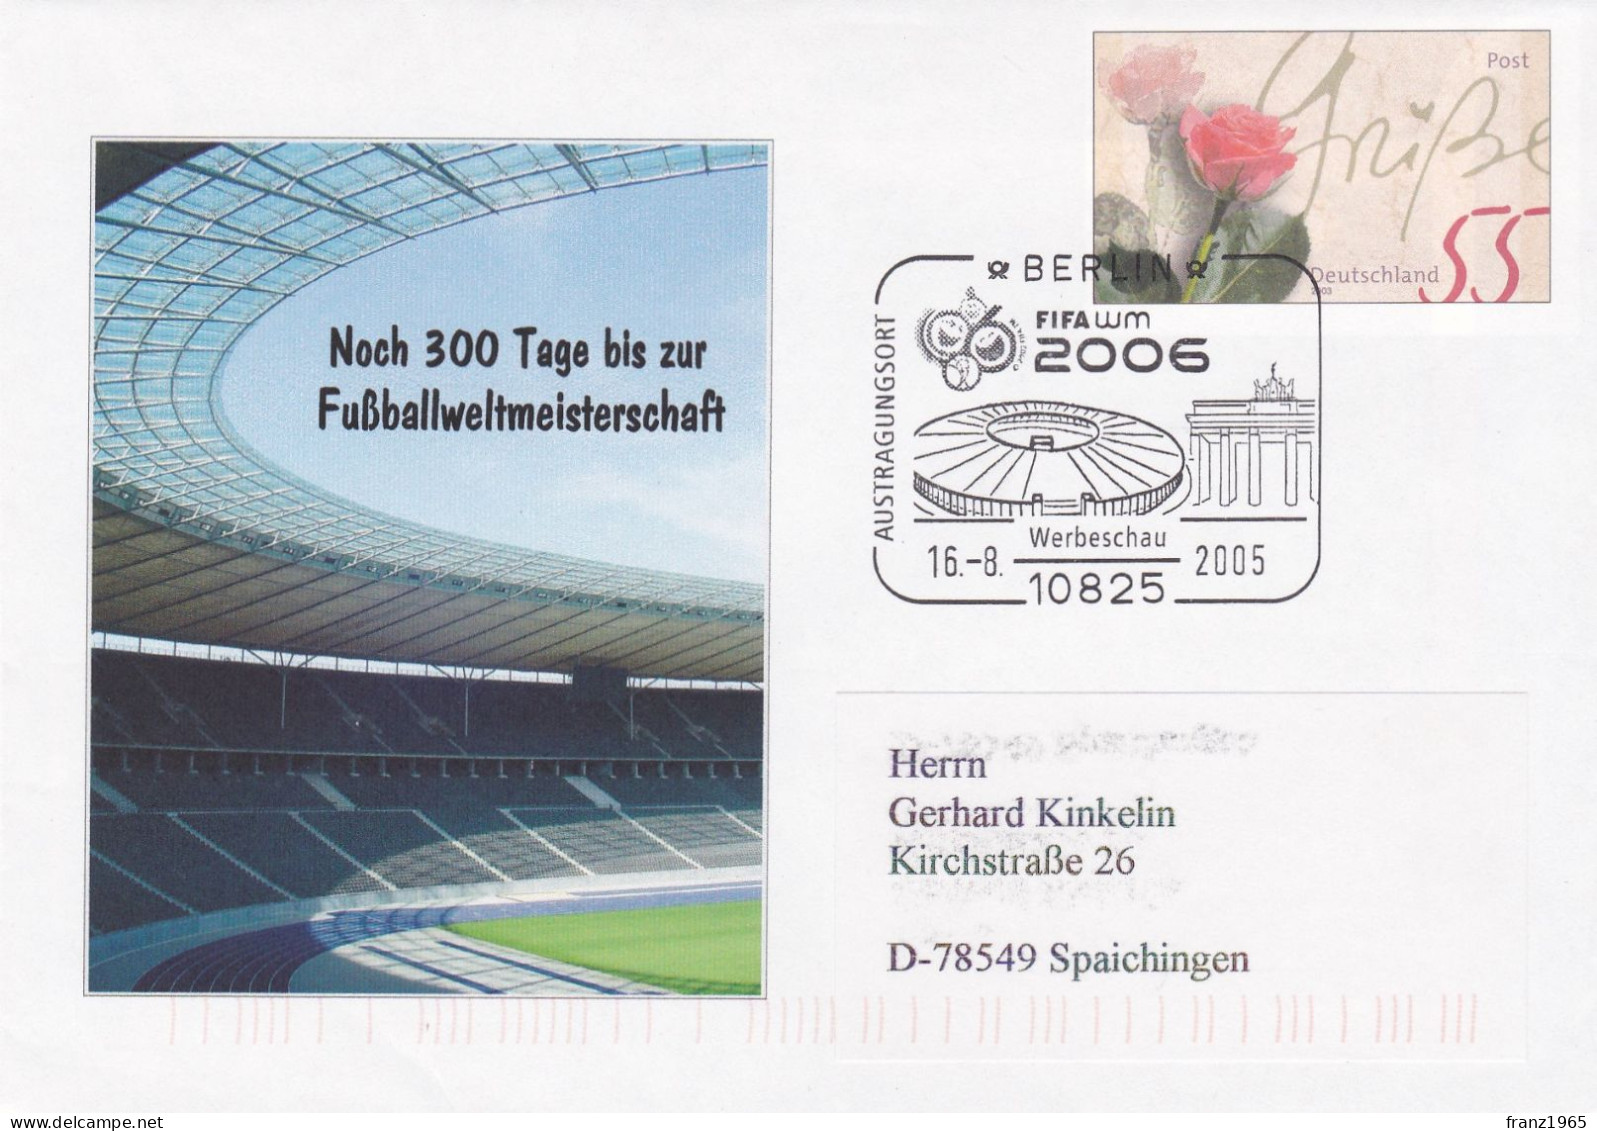 FIFA-WM 2006 - Berlin,16.8.2005 - 2006 – Alemania